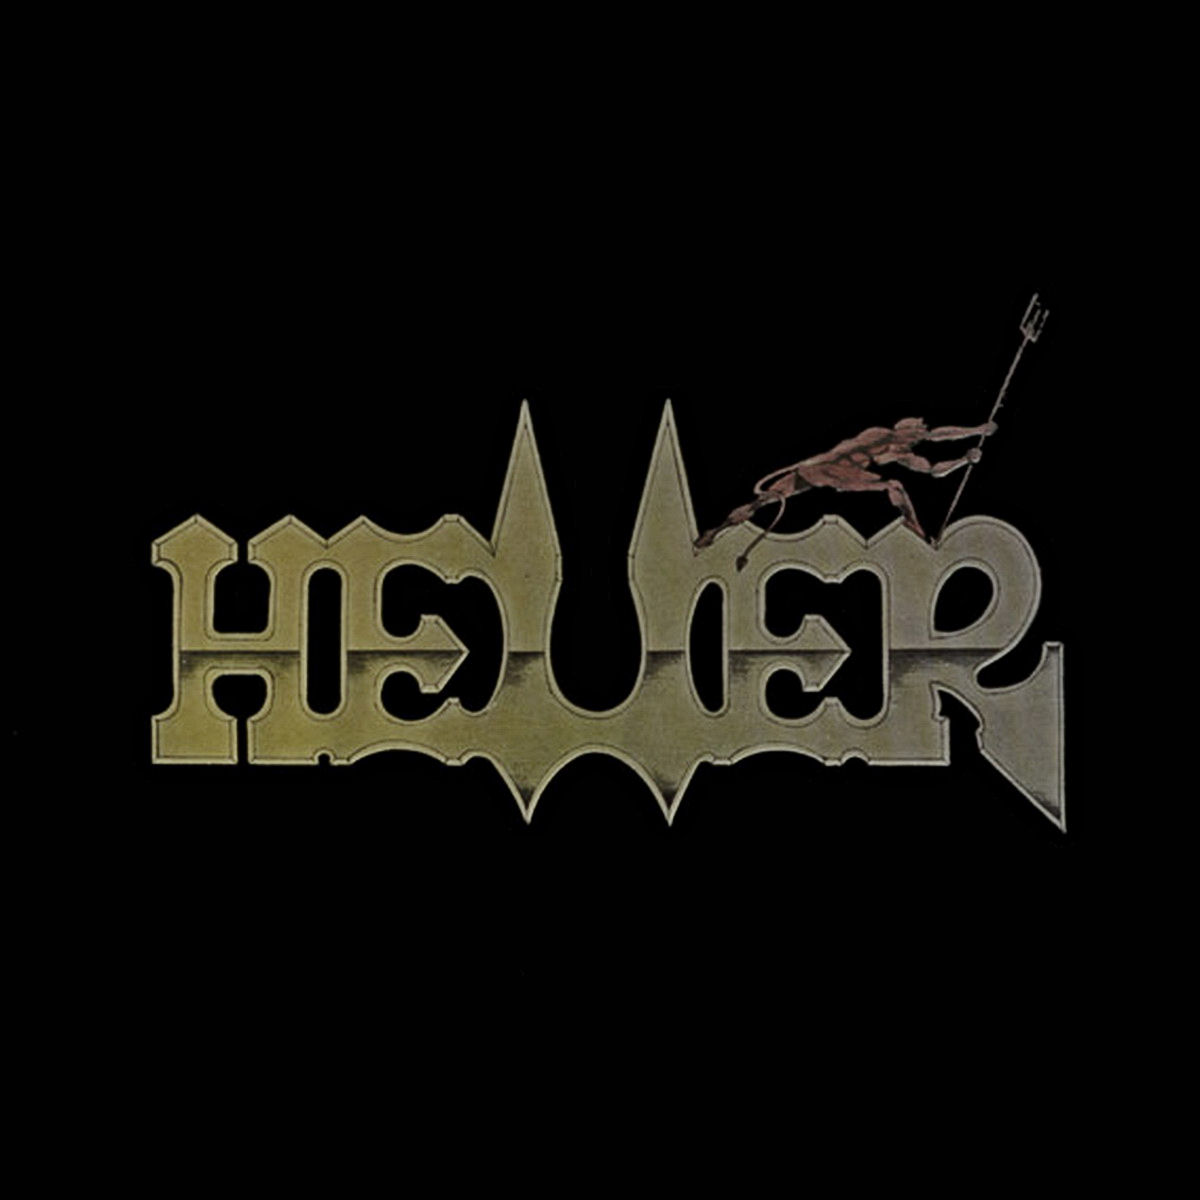 Heller 1990 Heller a